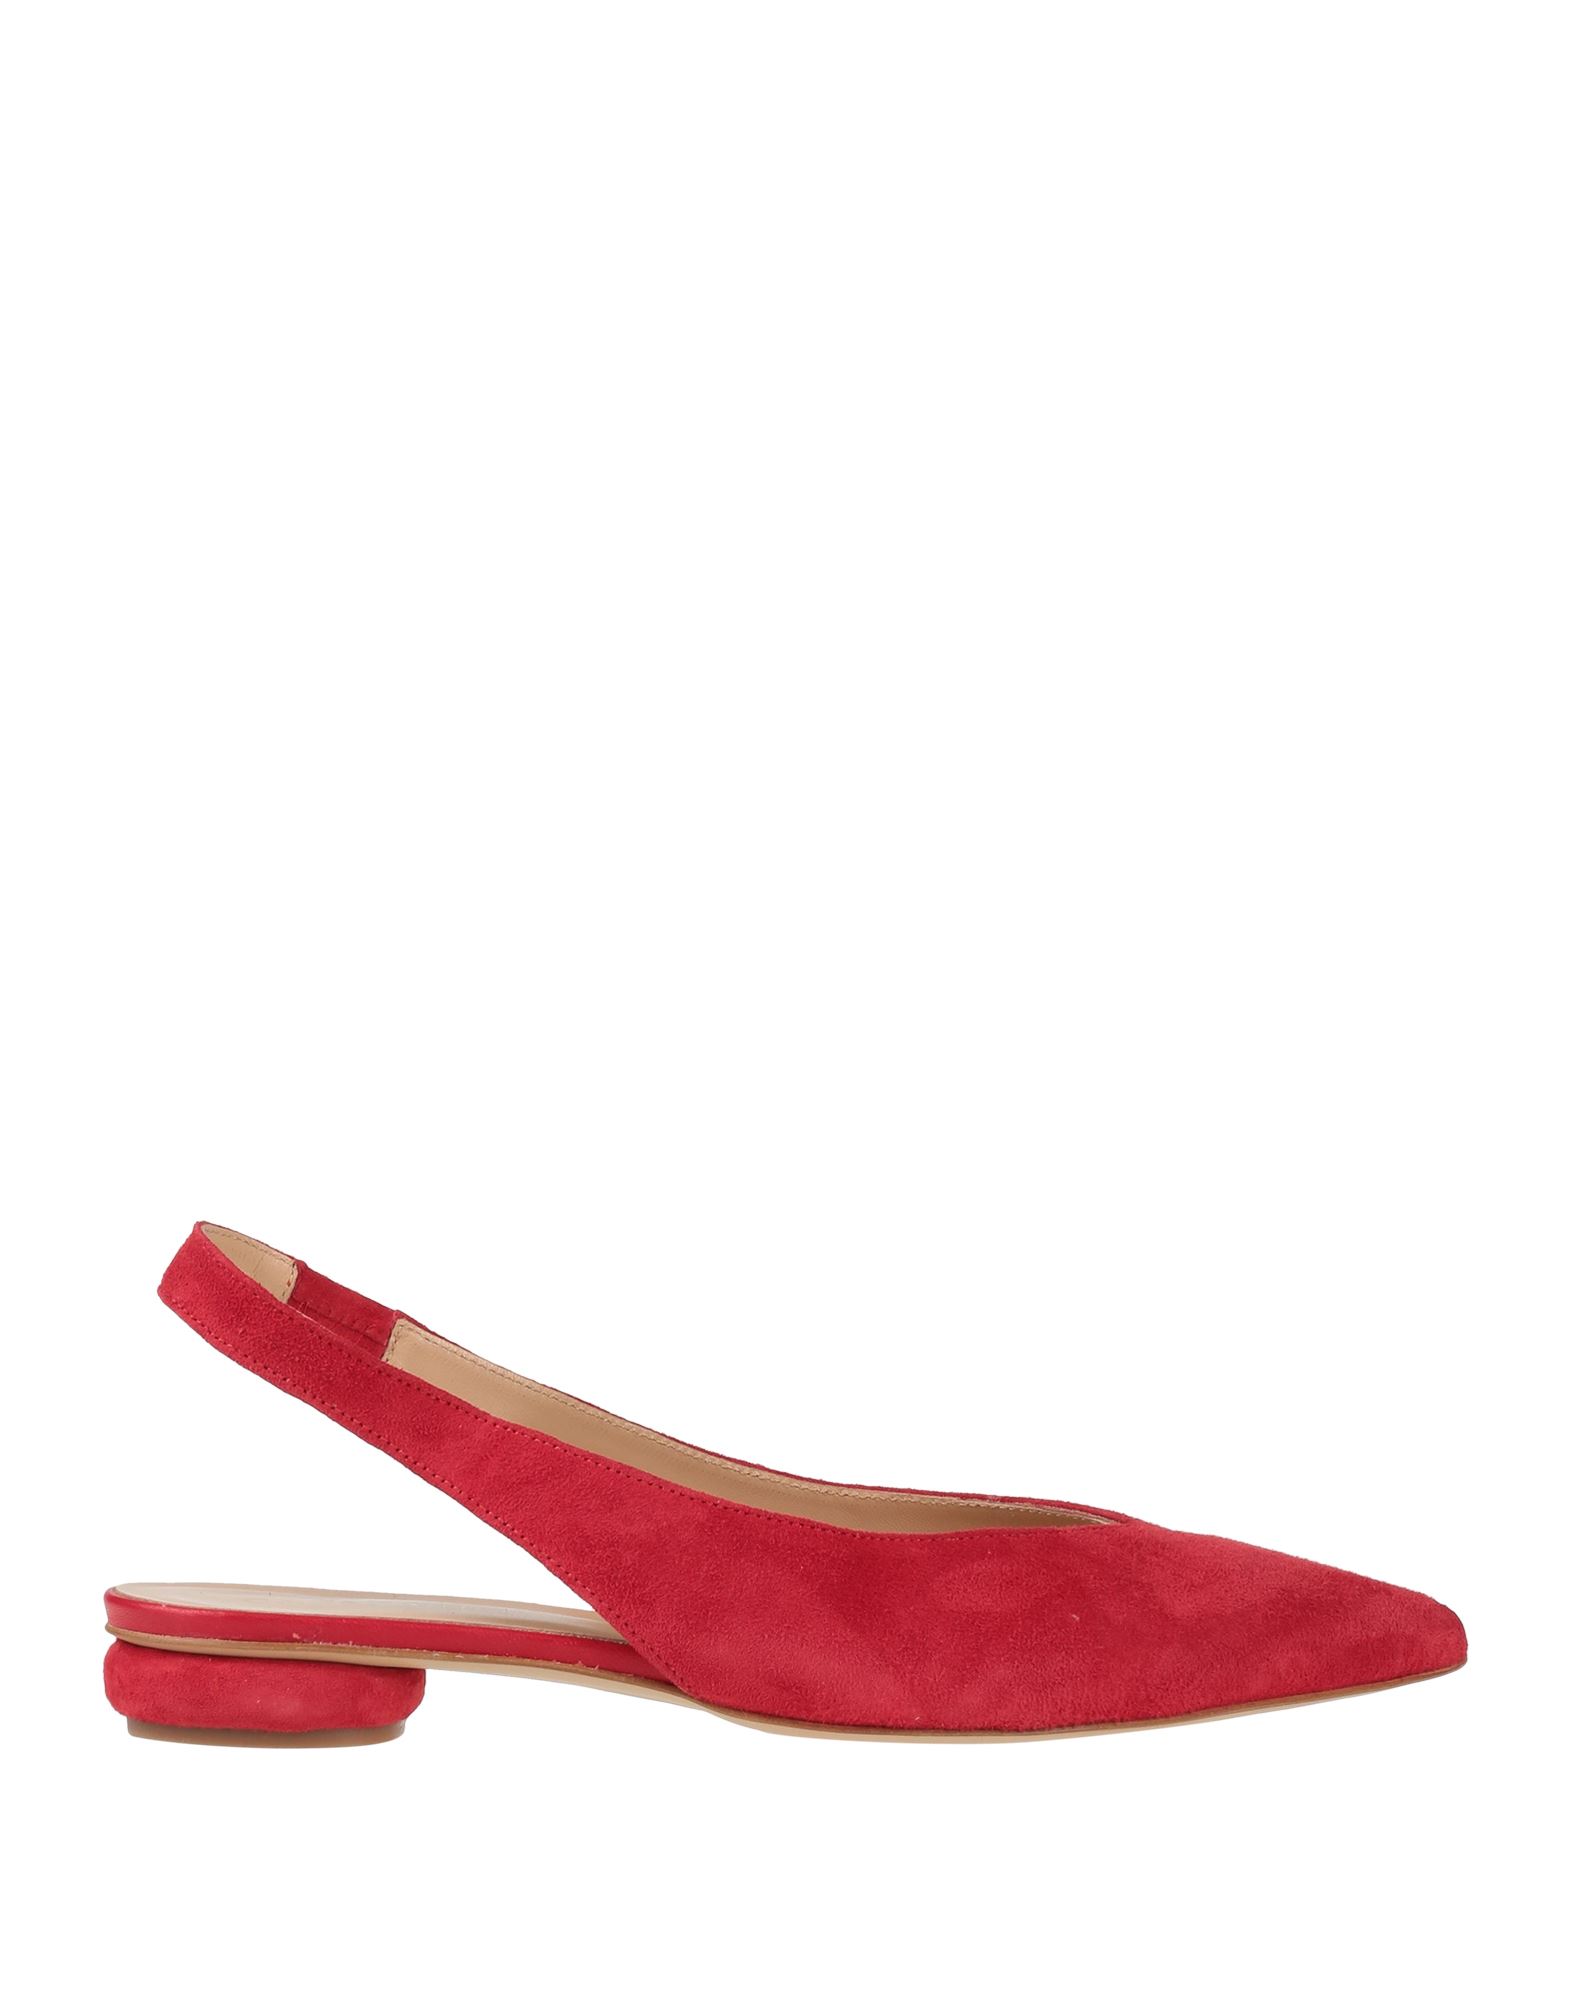 Cafènoir Woman Ballet Flats Red Size 6 Soft Leather